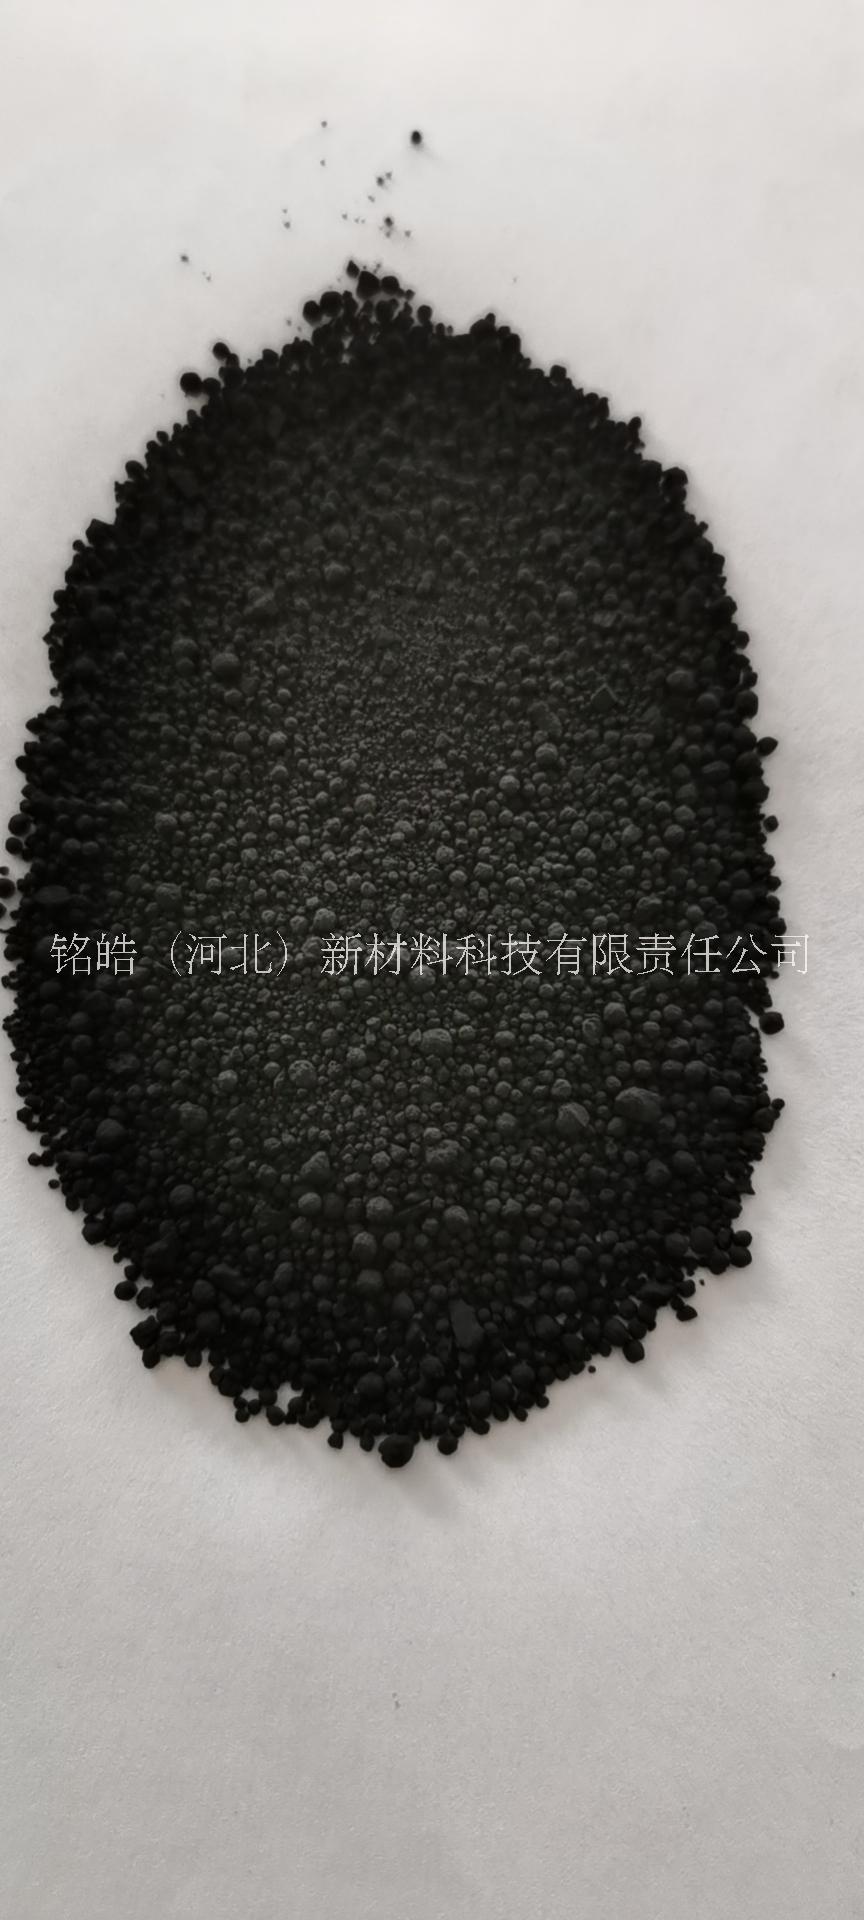 色素炭黑颗粒N330 橡胶碳黑颗粒现货出售图片